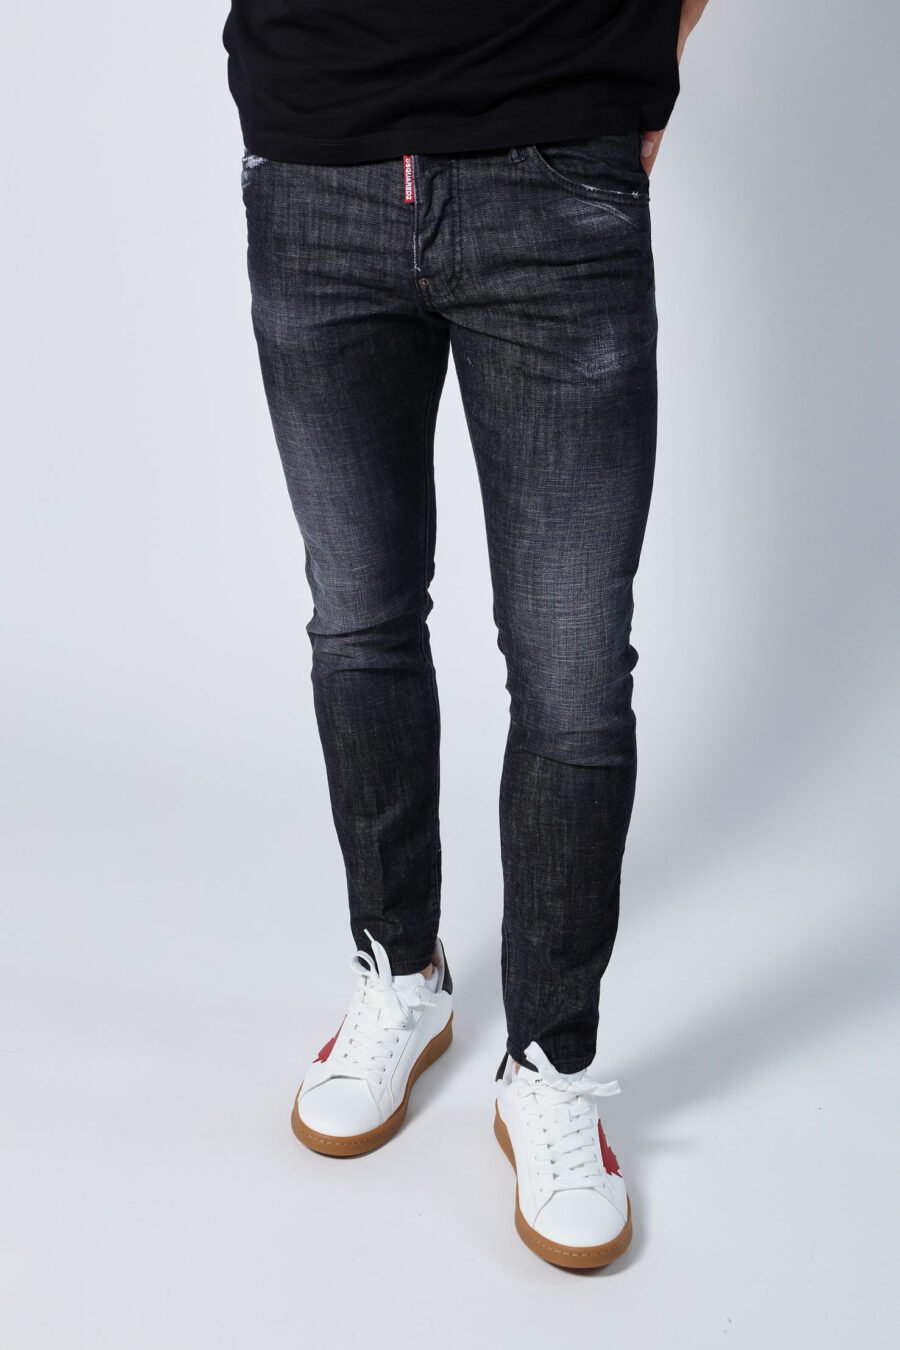 Halbgetragene schwarze "Skater-Jeans" Jeans - Untitled Catalog 05679